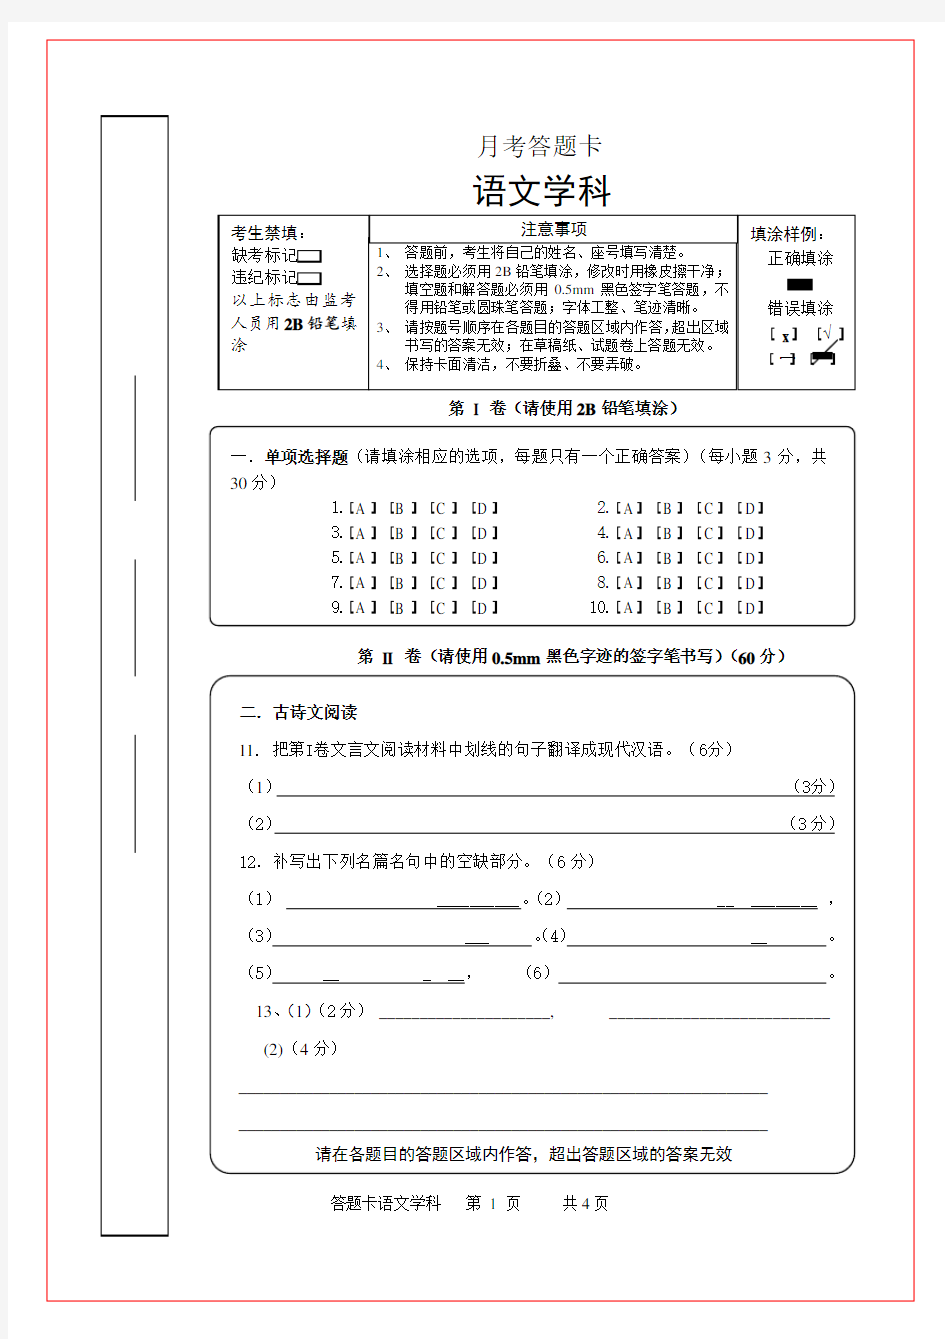 初中语文考试答题卡模板